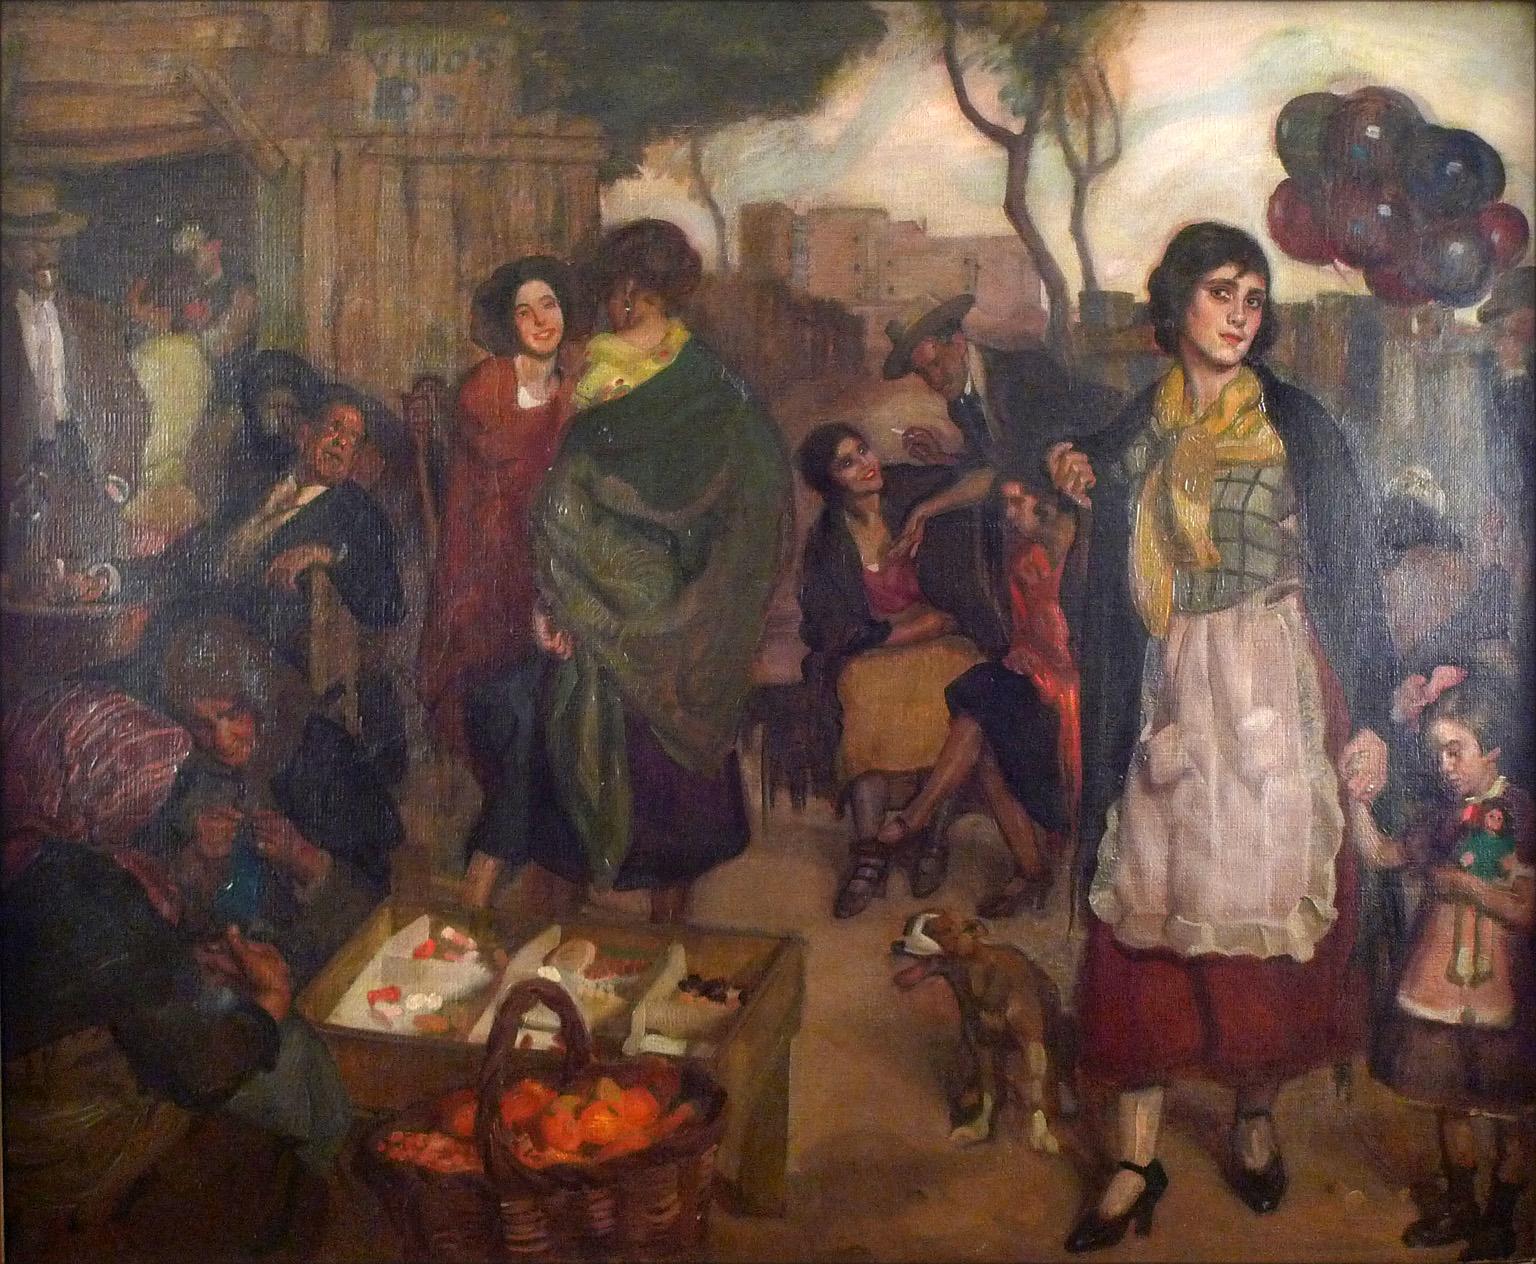 Día de mercado, Oil on Canvas by José María López Mezquita 1